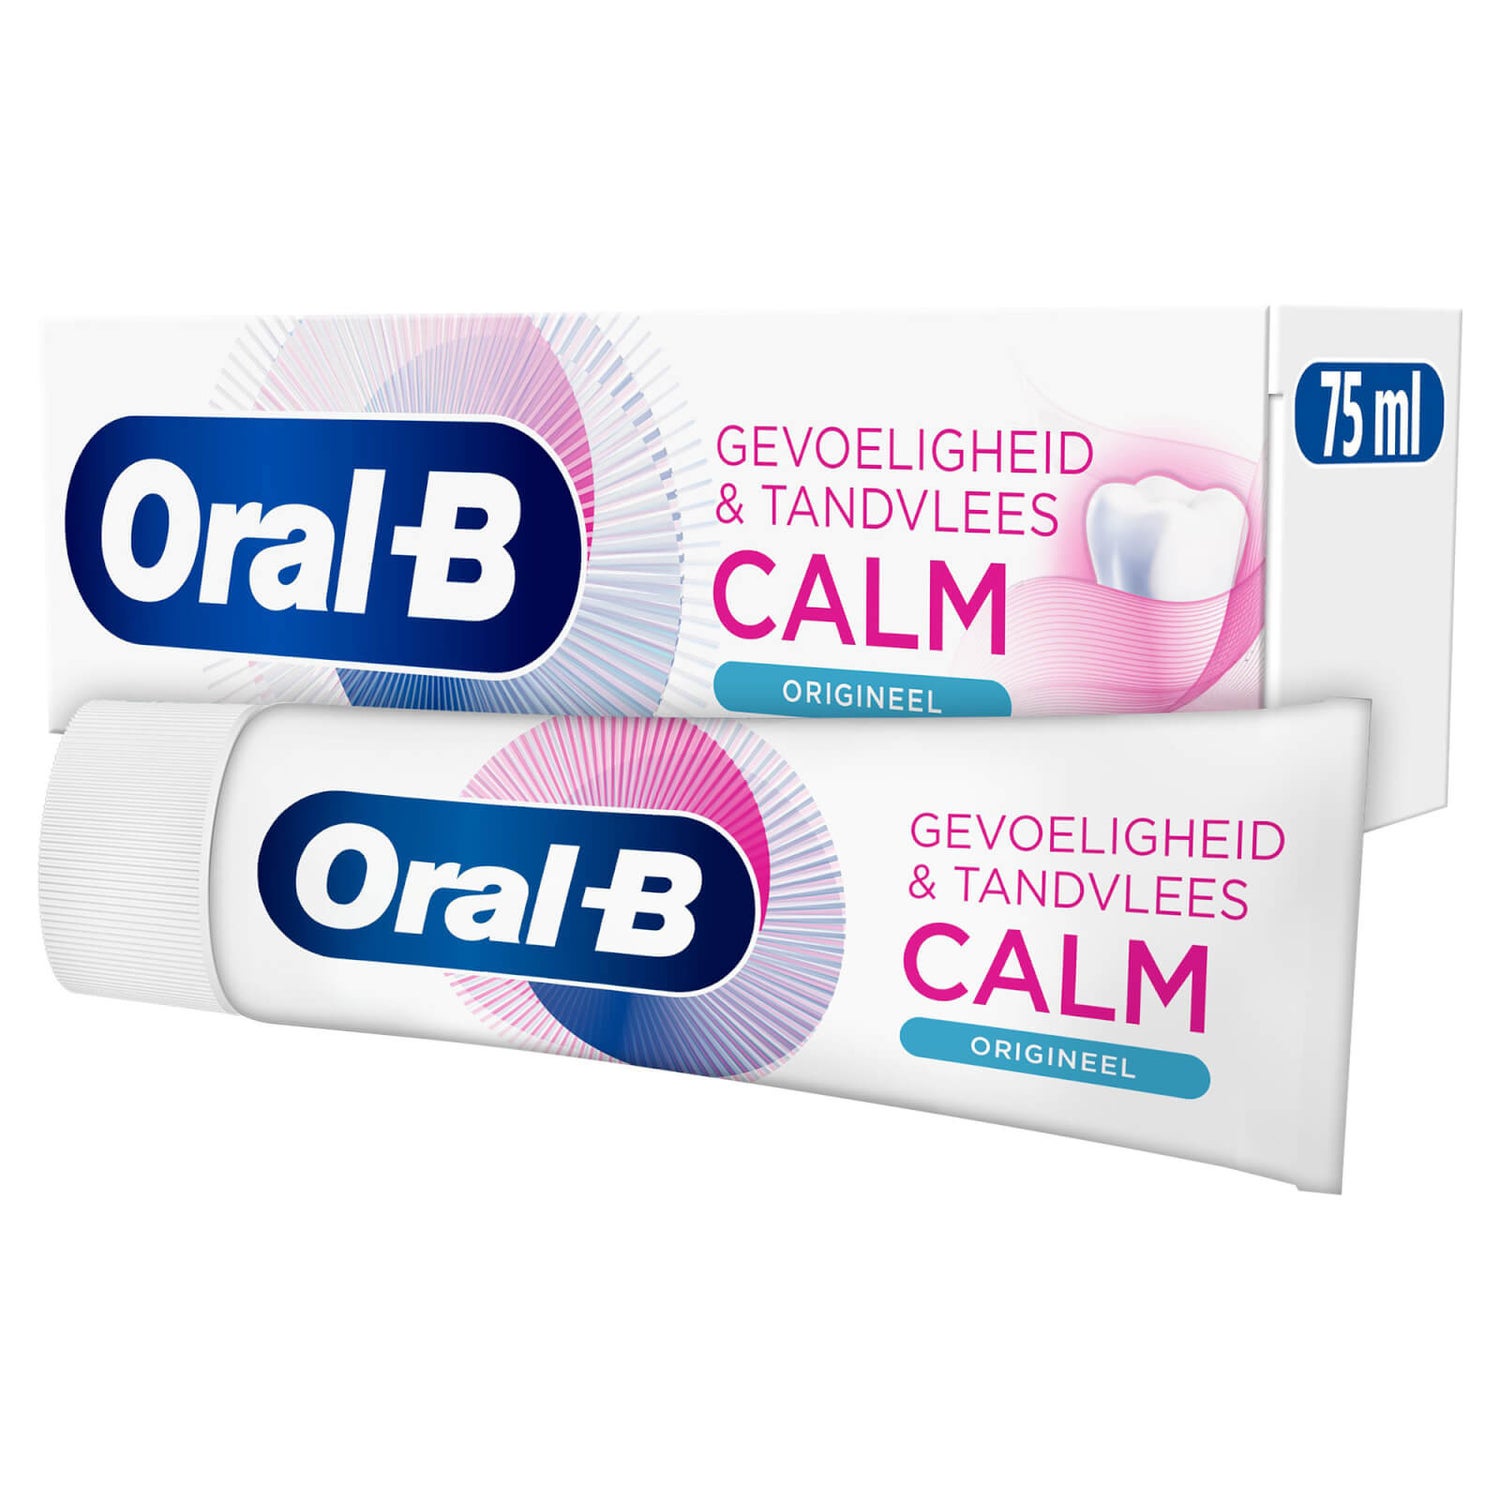 Oral-B Gevoeligheid & Tandvlees Calm Origineel Tandpasta 75 ml